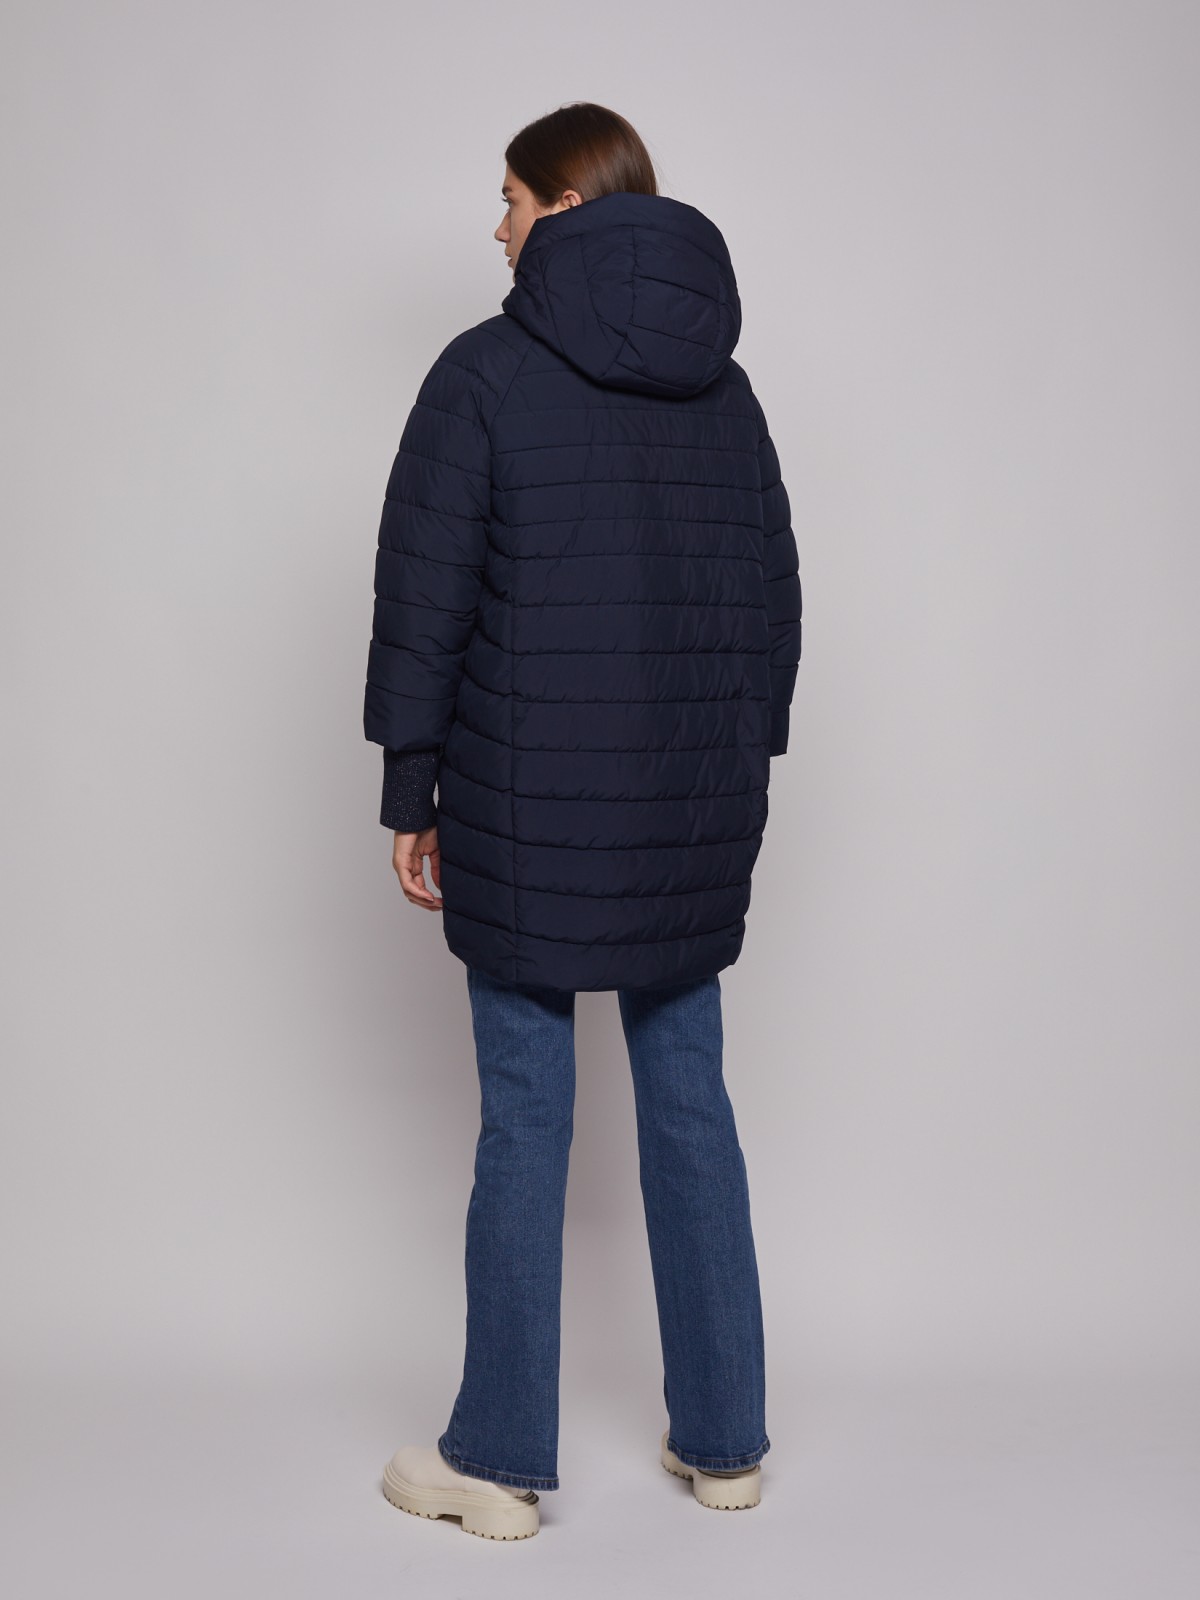 Утеплённое пальто объёмного силуэта zolla 022335202084, цвет синий, размер S - фото 5